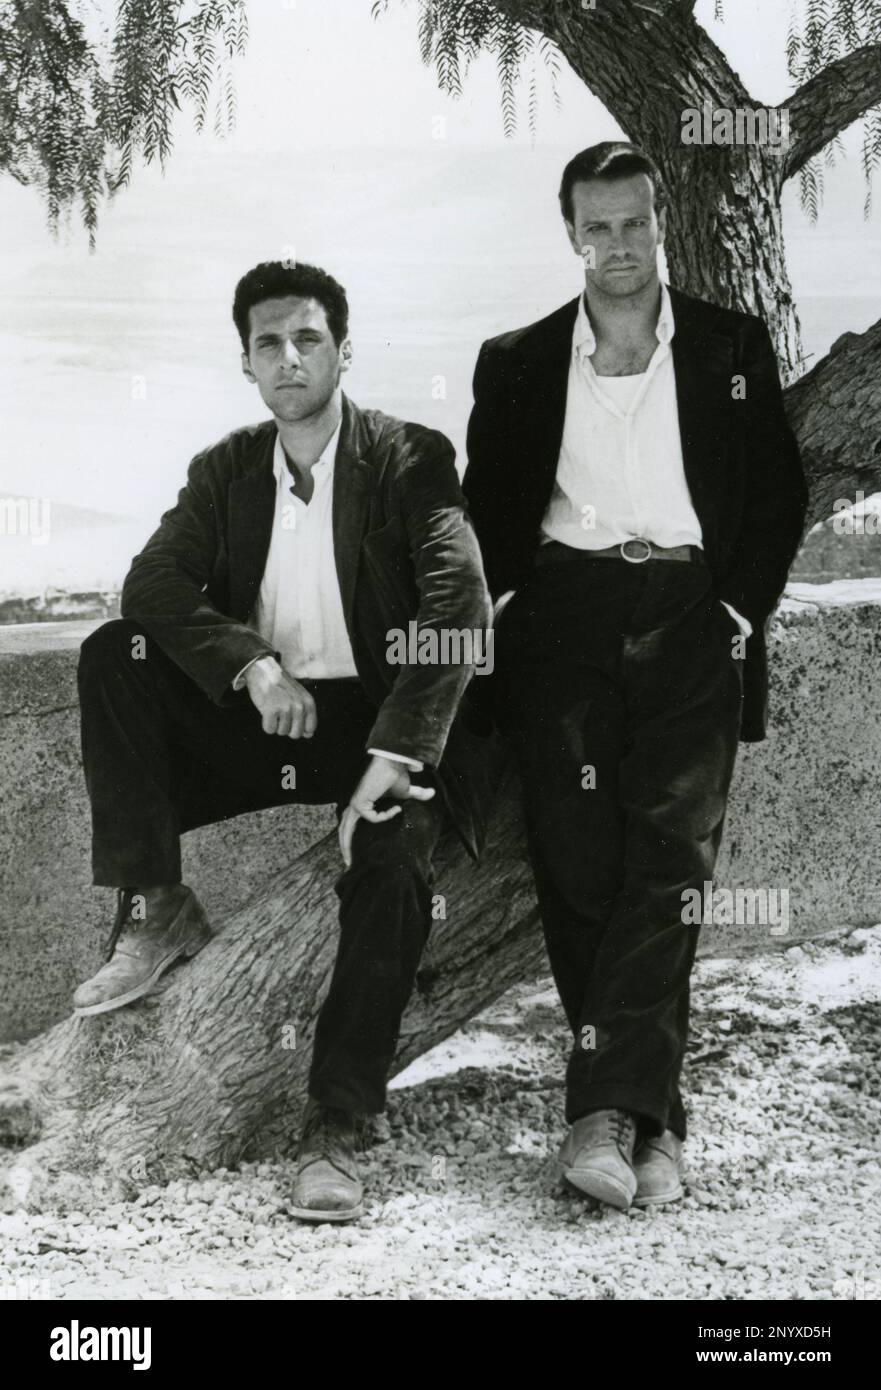 Acteurs John Turturro et Christopher Lambert dans le film le sicilien, USA 1987 Banque D'Images